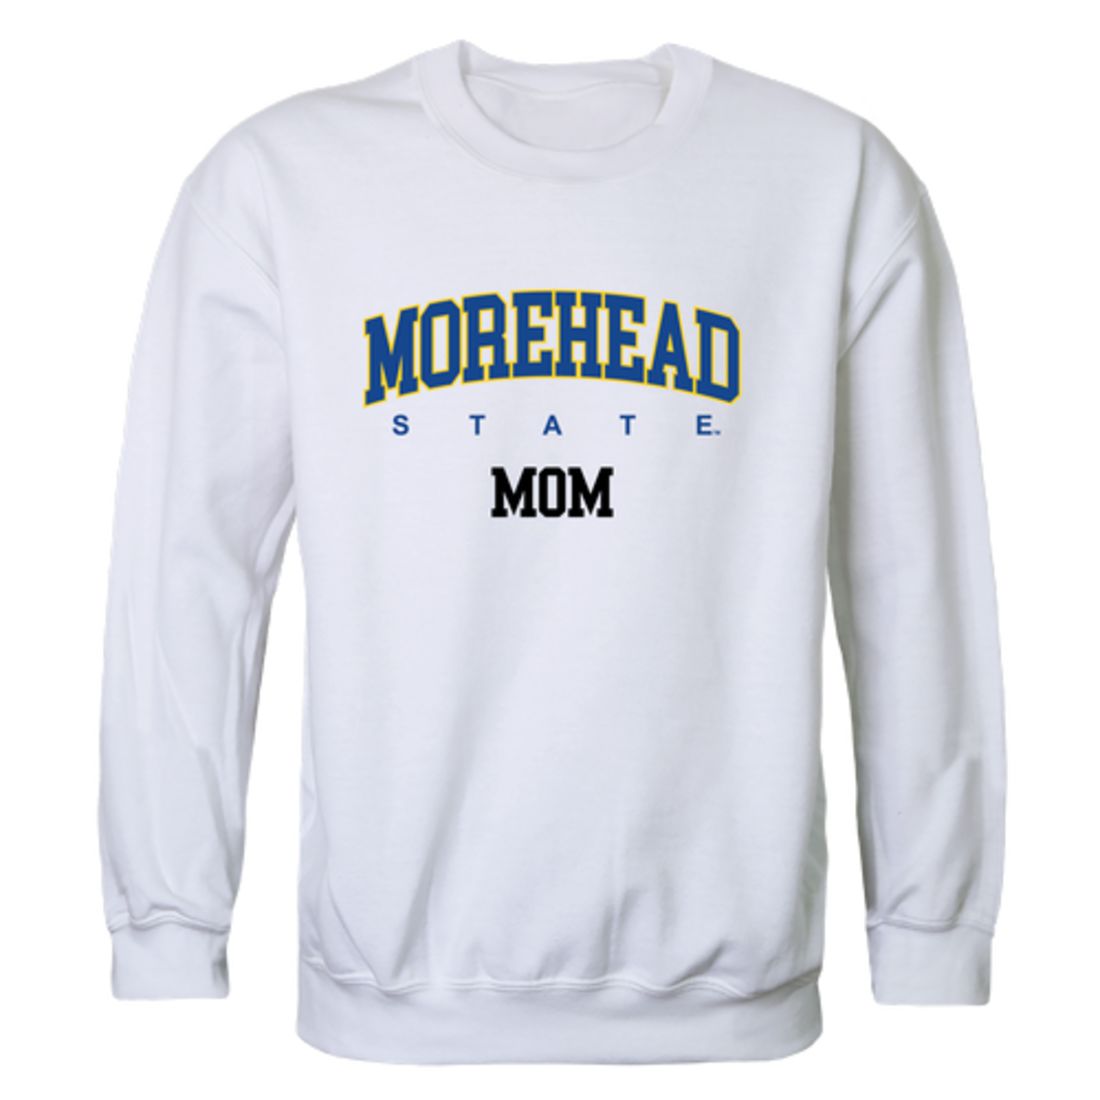 MSU Morehead State University Eagles Mom Fleece Crewneck Pullover Sweatshirt Heather Grey Small-Campus-Wardrobe